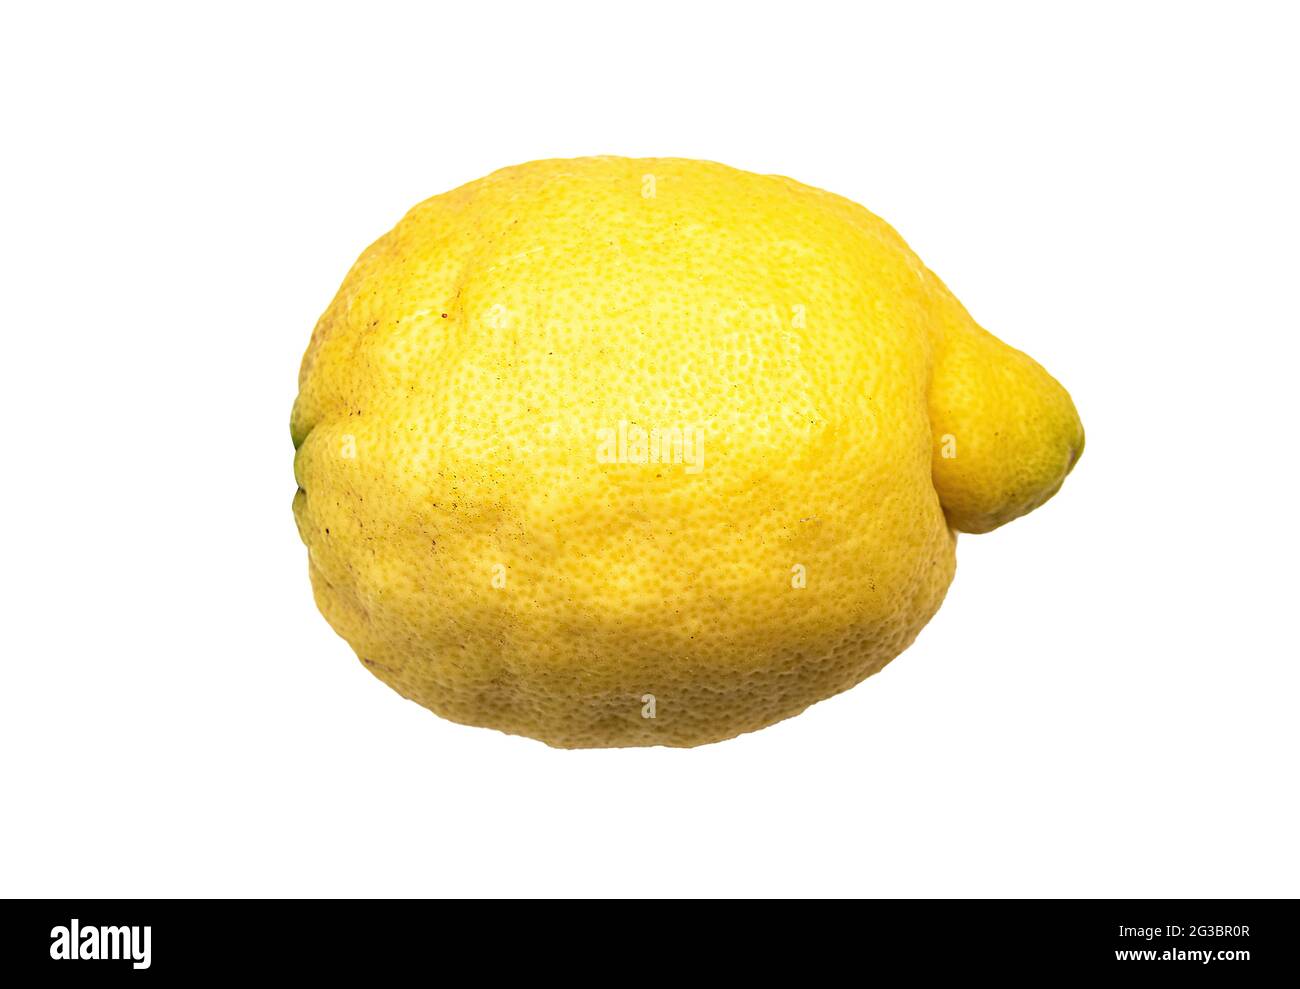 single amalfi lemon, sfusato amalfitano, isolated on white background Stock Photo